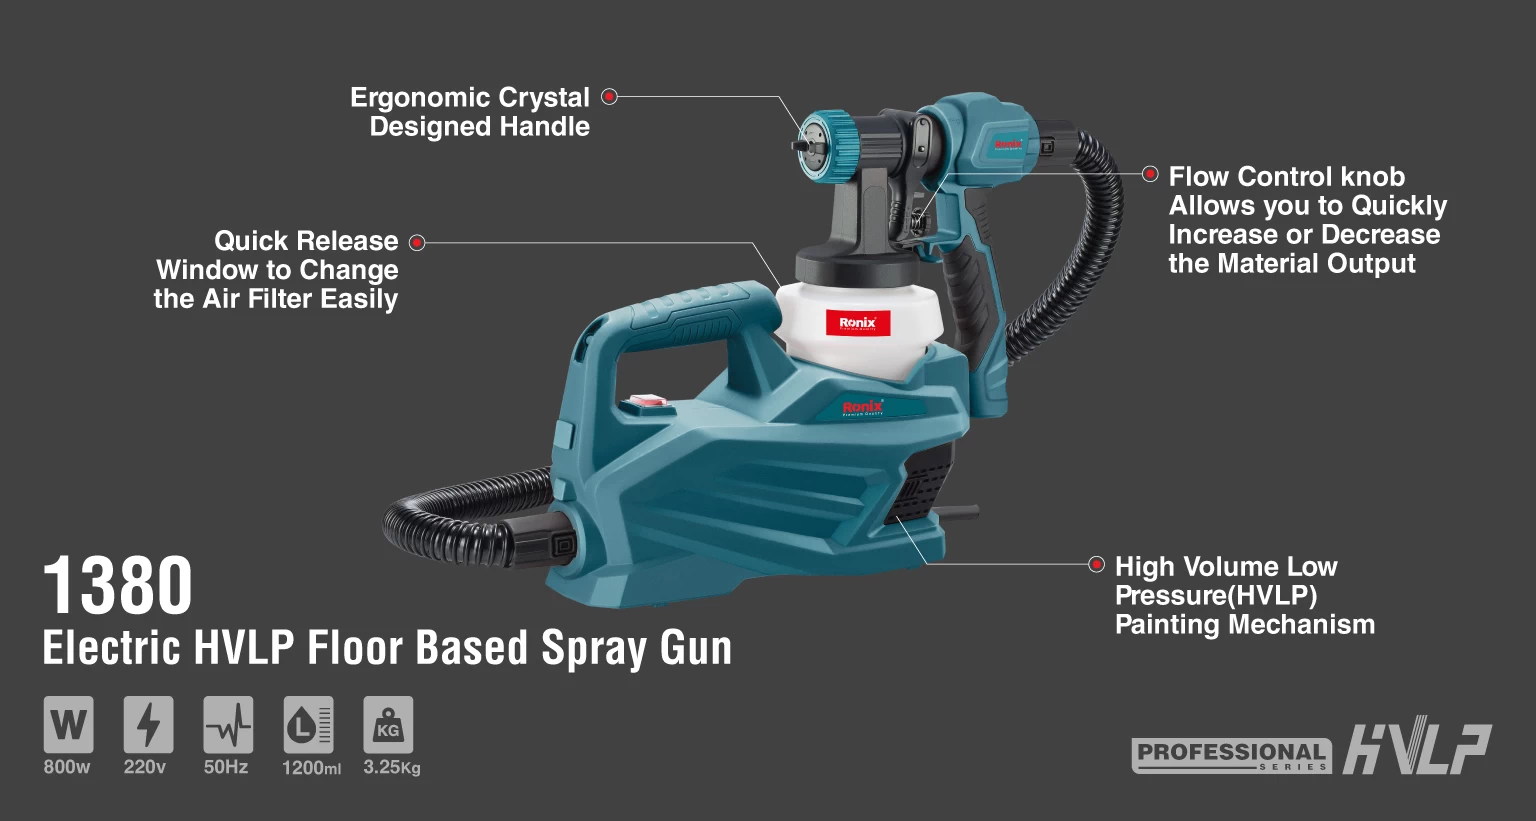 Electric HVLP floor based Spray Gun 800W_details